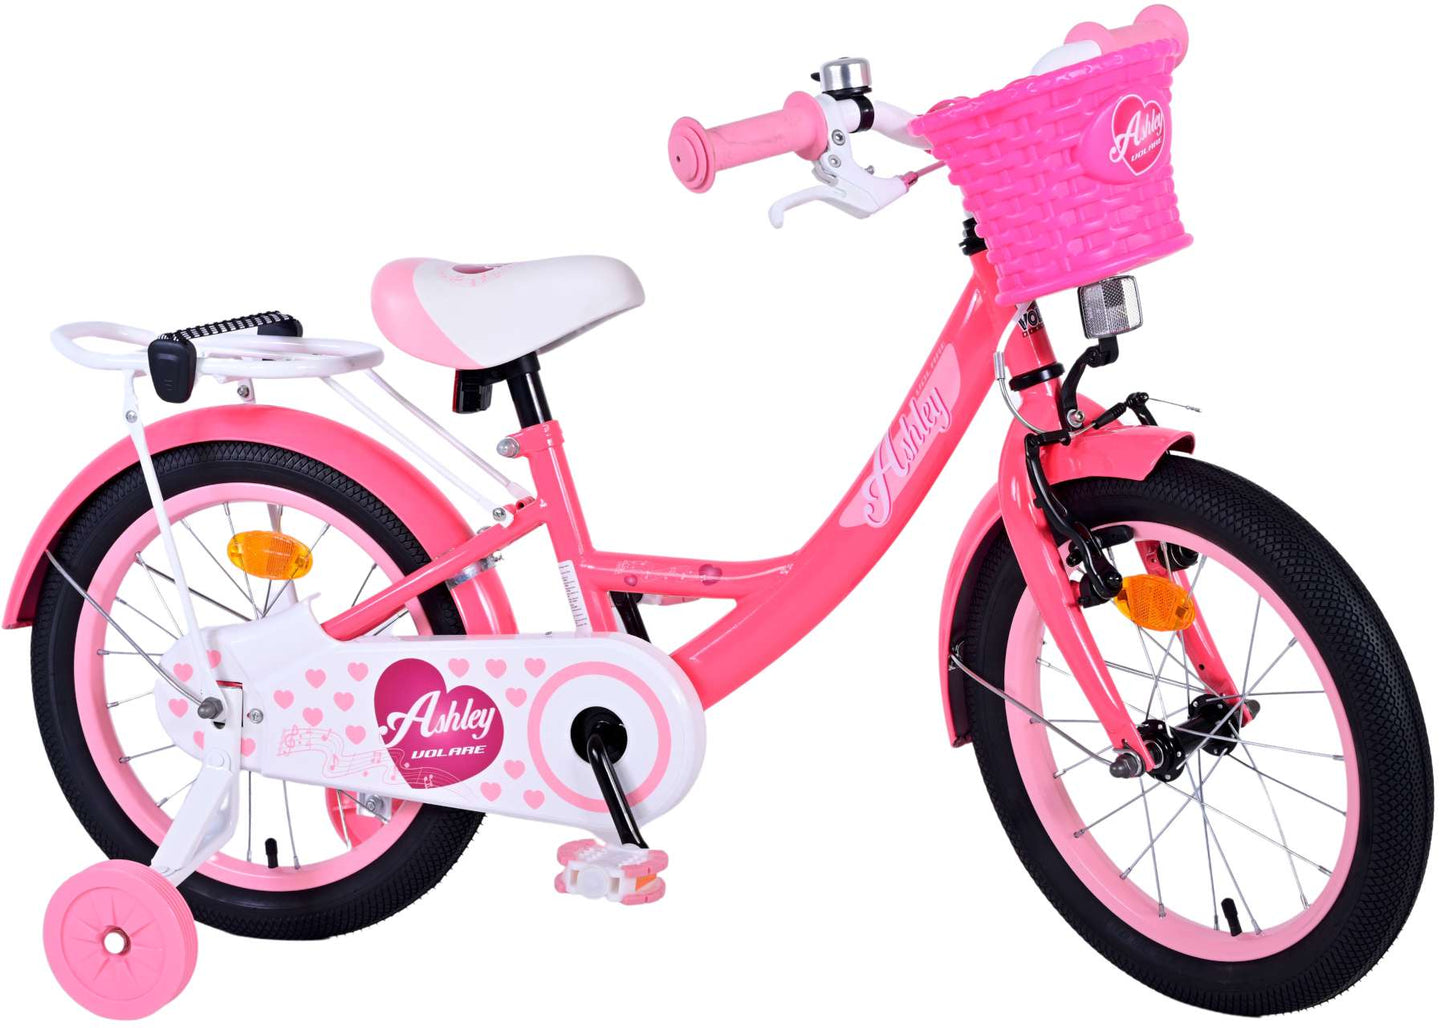 Bicicleta para niños de Vinare Ashley - Niñas - 16 pulgadas - Rojo rosa